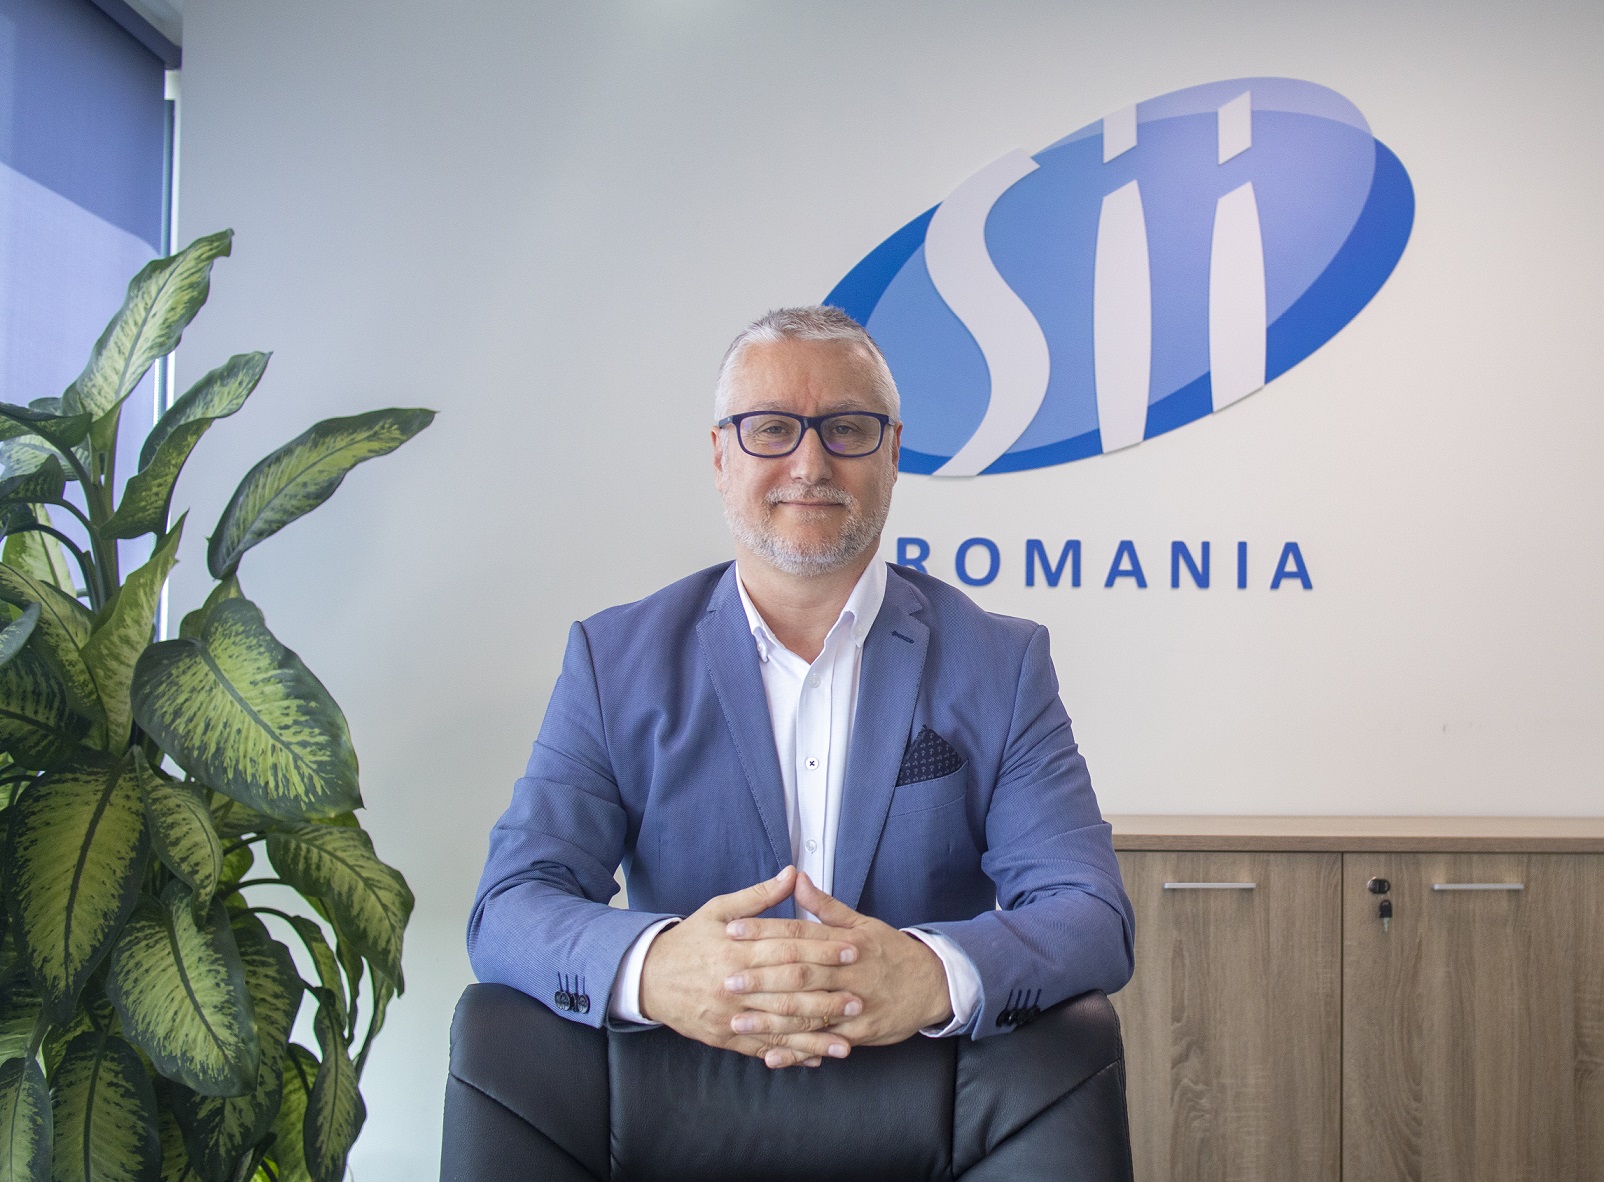 Manel Ballesteros, CEO SII Romania